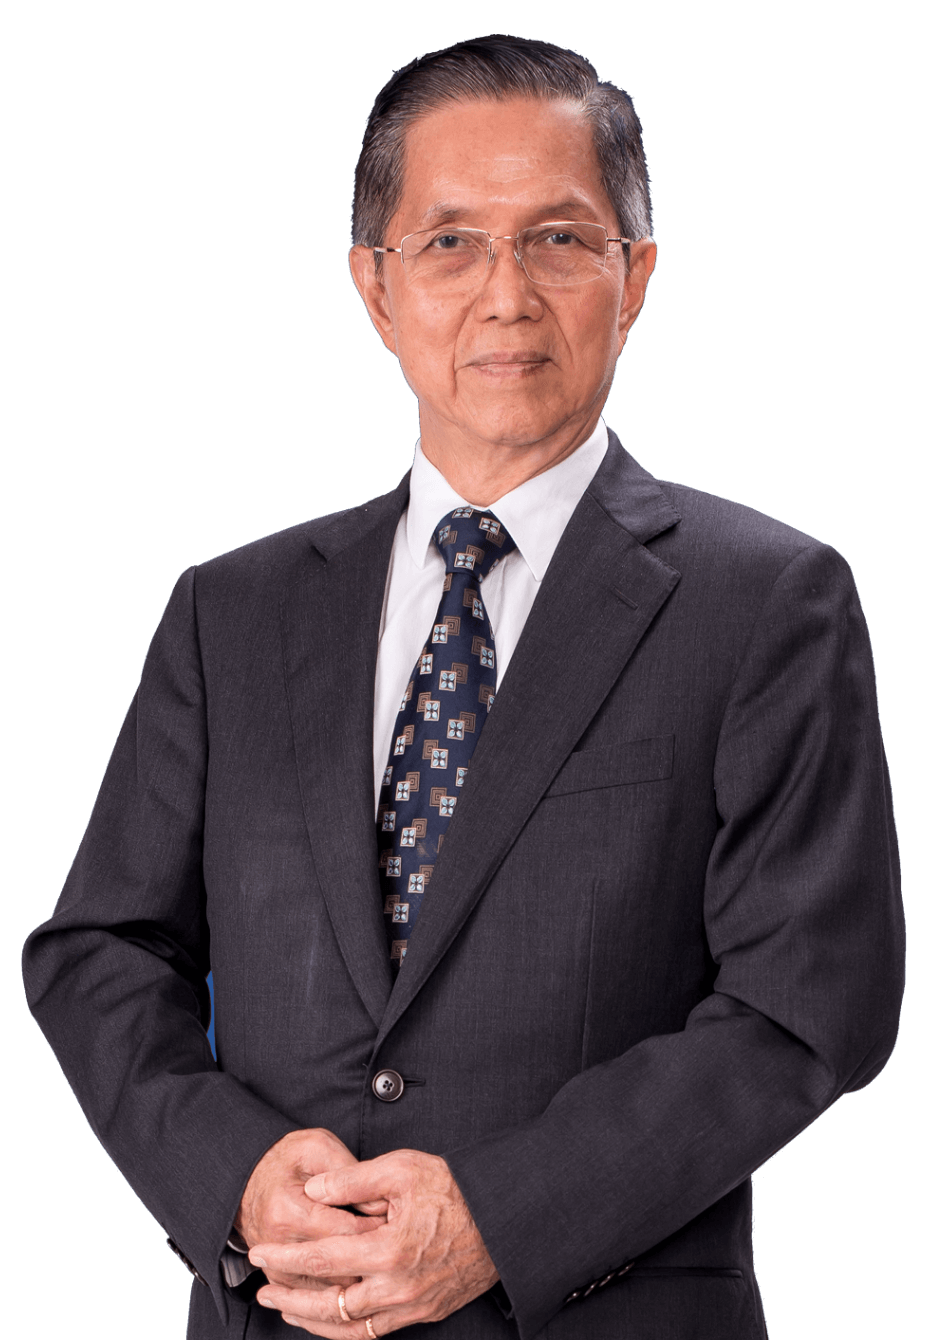 Tan Sri Dato’ (Dr.) Chew Chee Kin